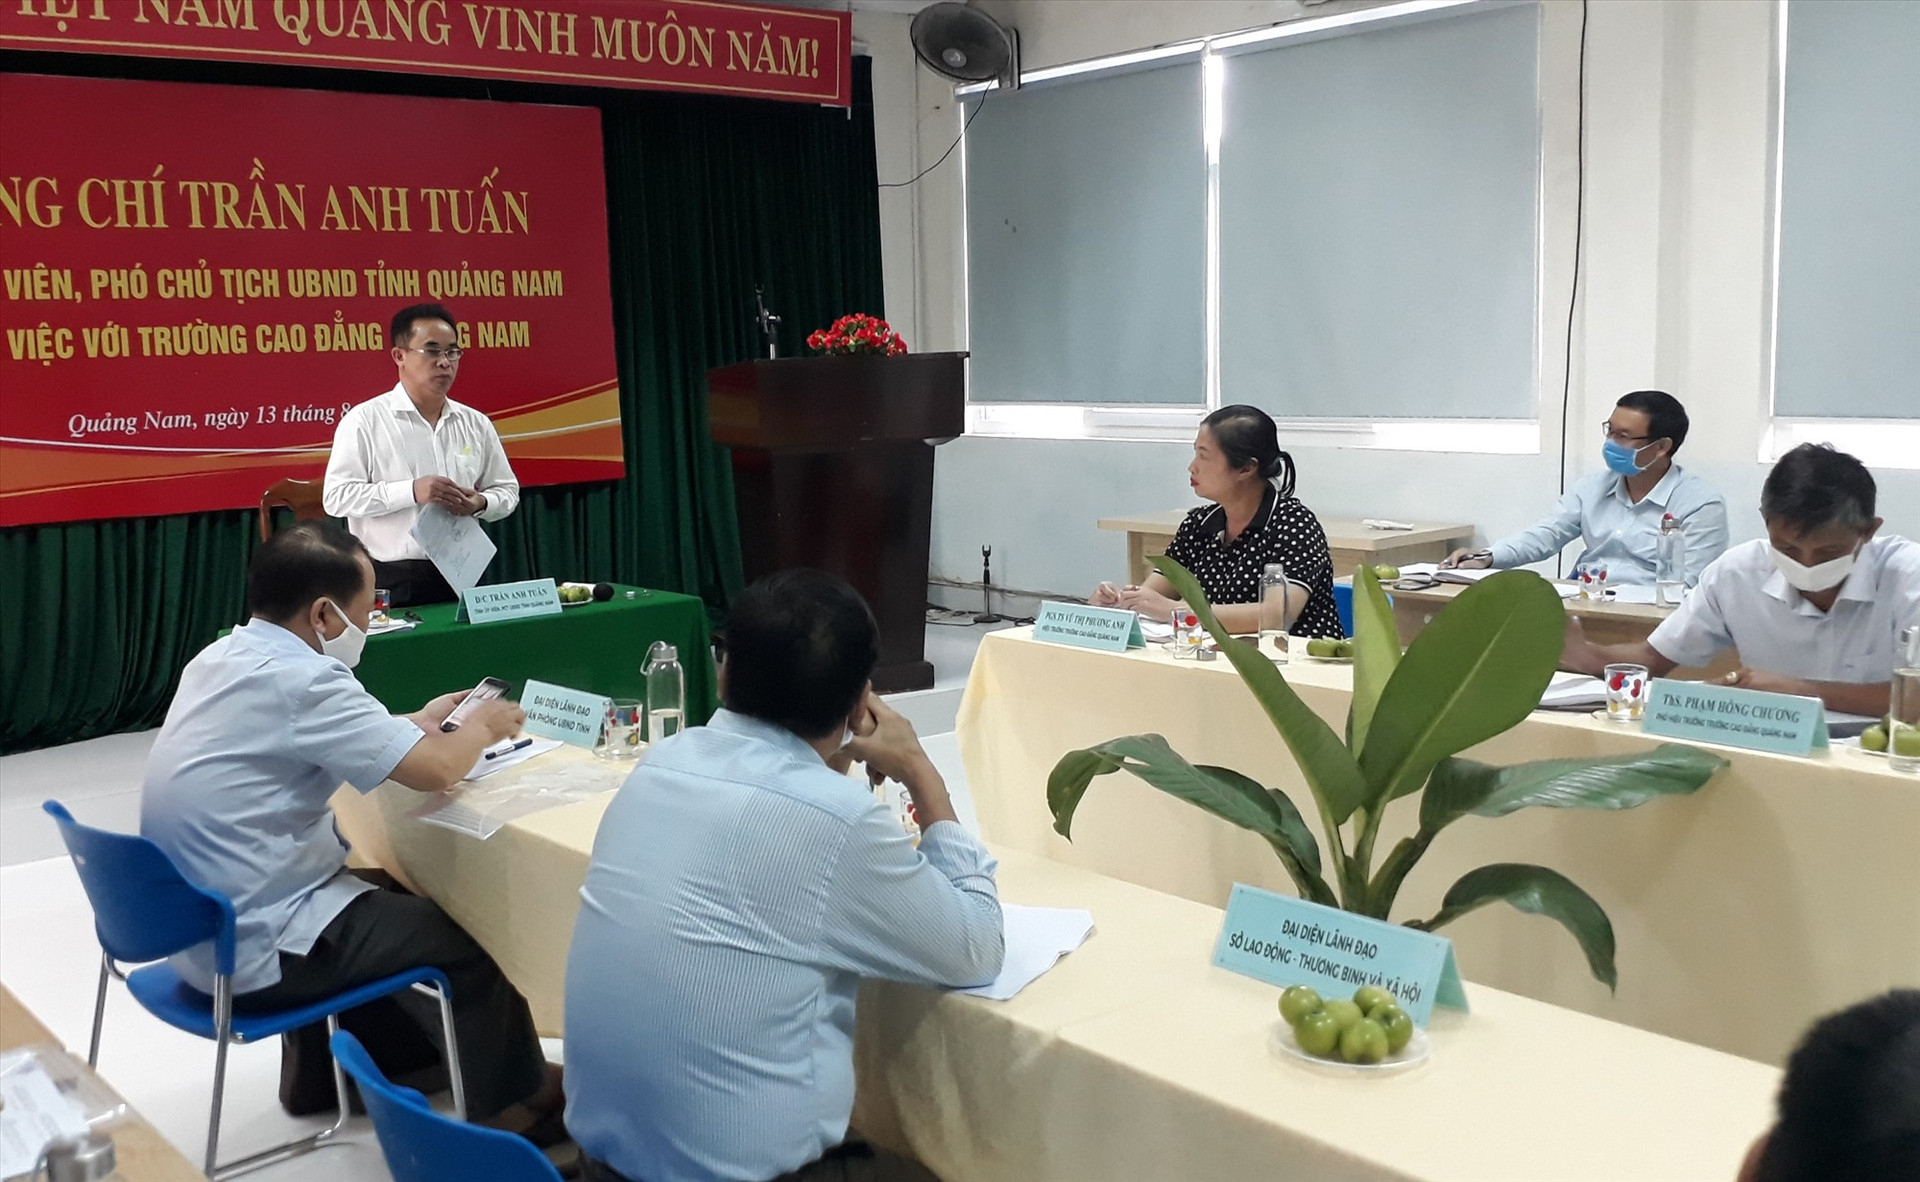 Phó Chủ tịch UBND tỉnh Trần Anh Tuấn lưu ý nhà trường quan tâm đến tuyển sinh, đào tạo. Ảnh: X.P